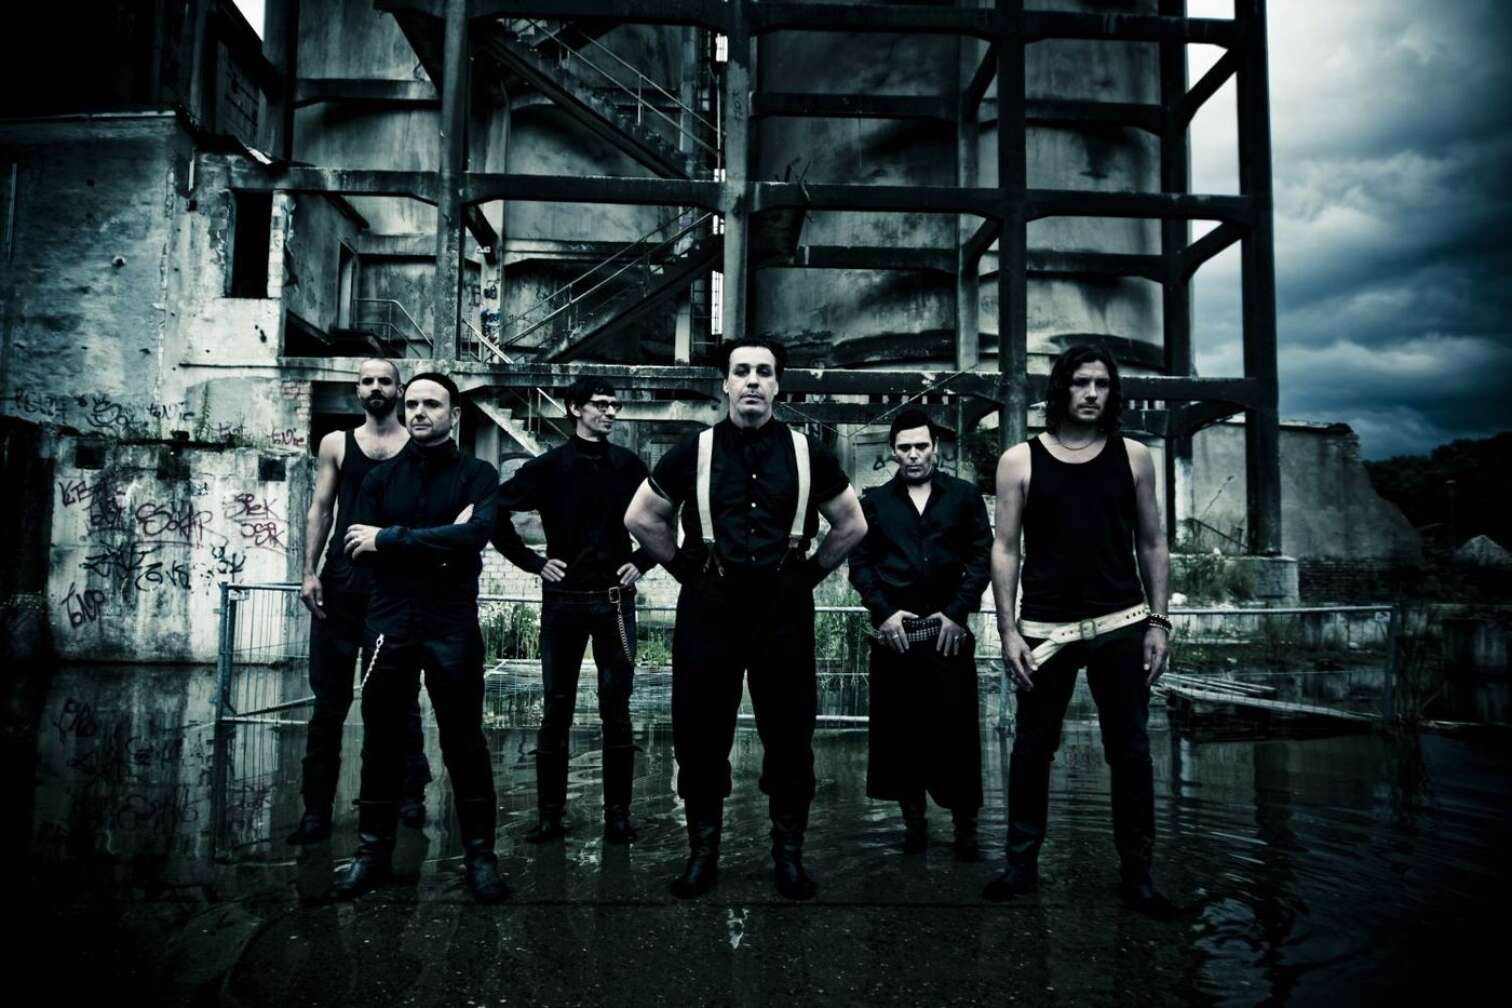 Rammstein Gruppenfoto in Schwarz-Weiß